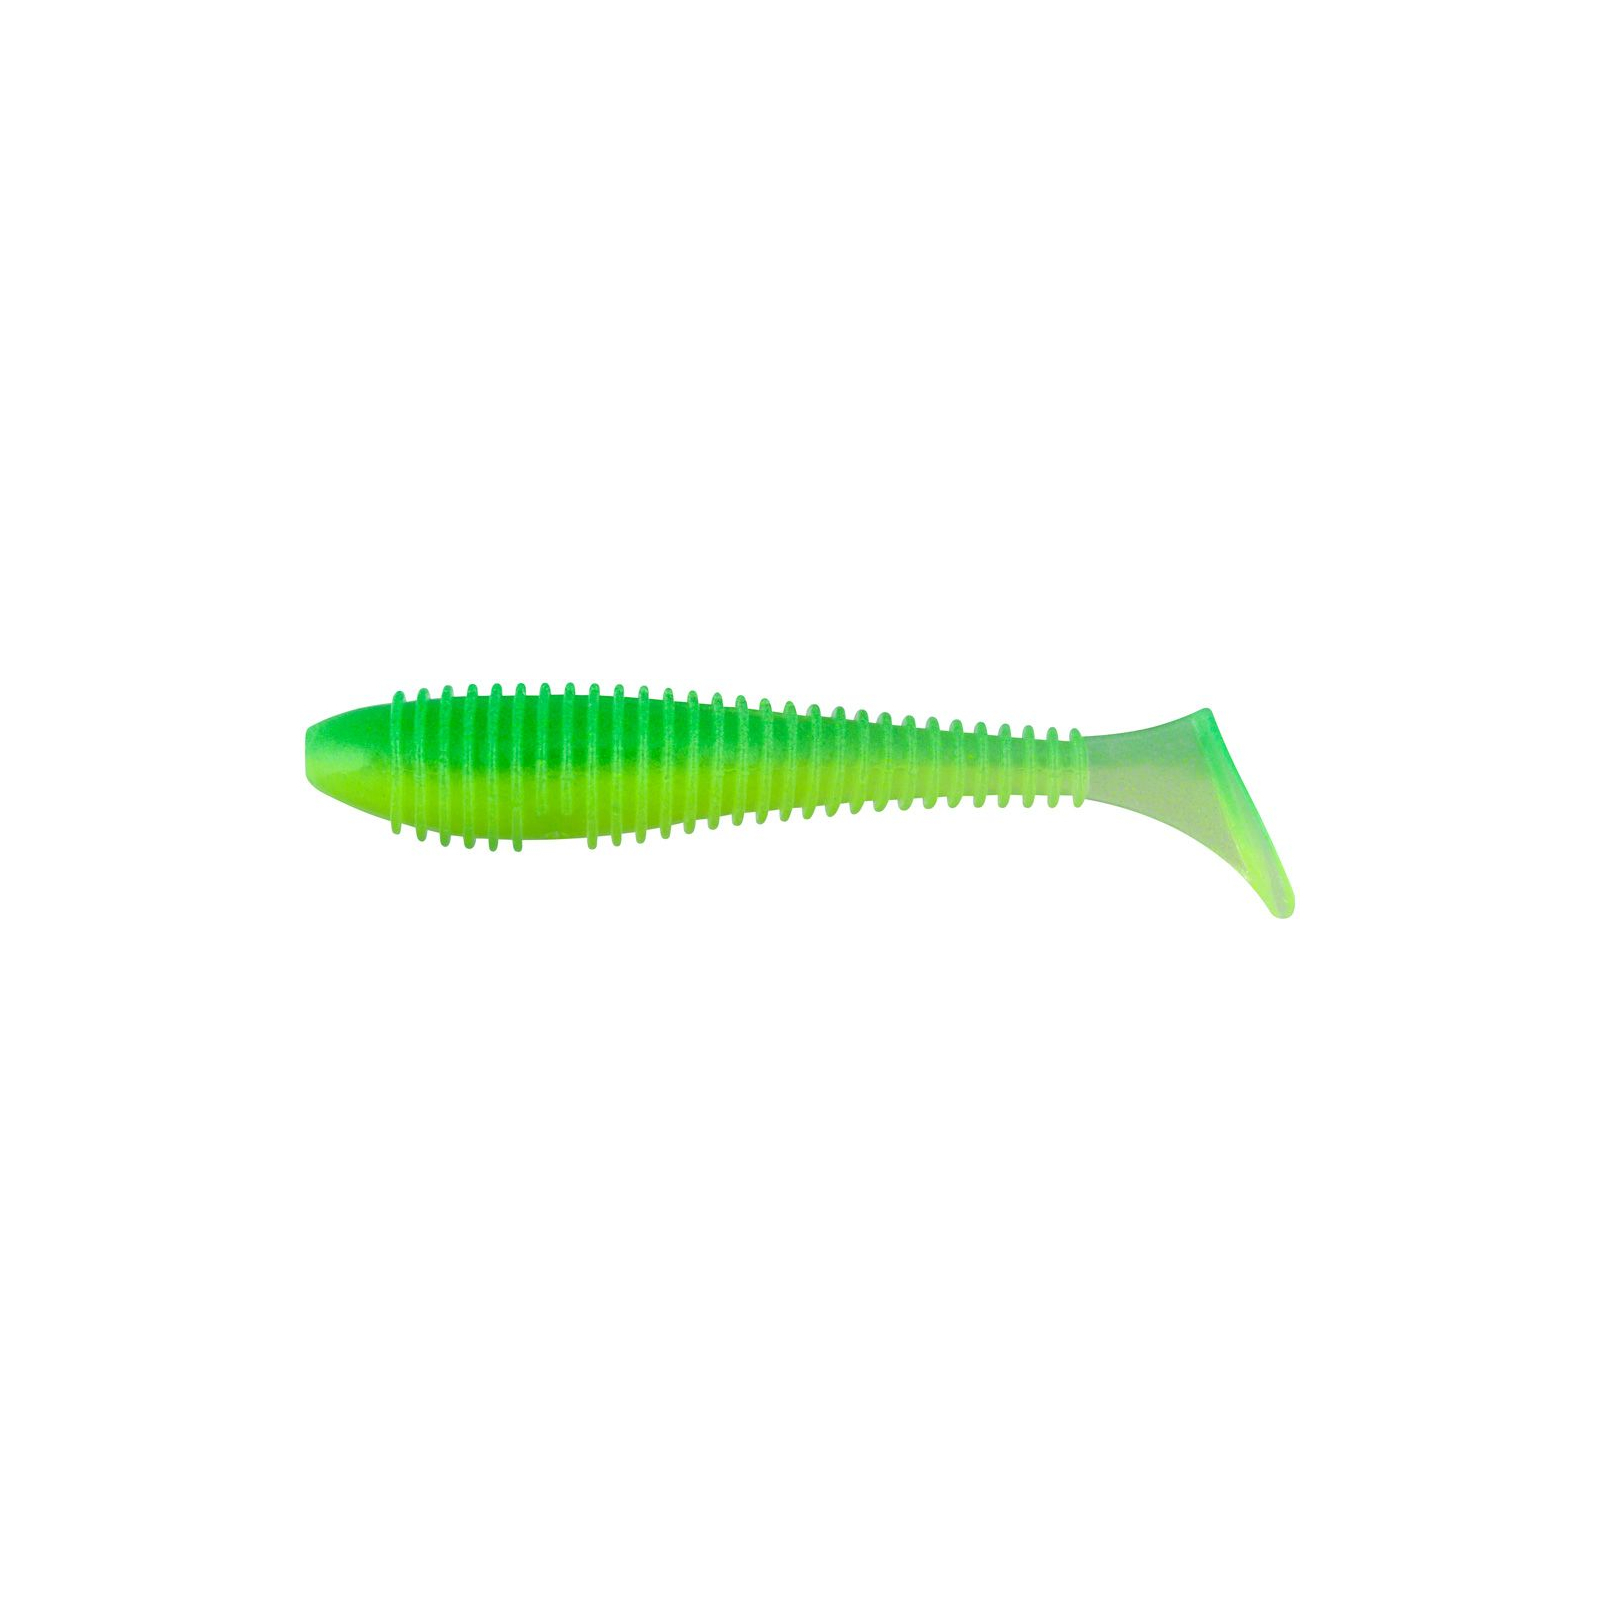 Силикон рыболовный Keitech Swing Impact FAT 3.8" (6 шт/упак) ц:ea#11 limechartreuseglow (1551.07.19)